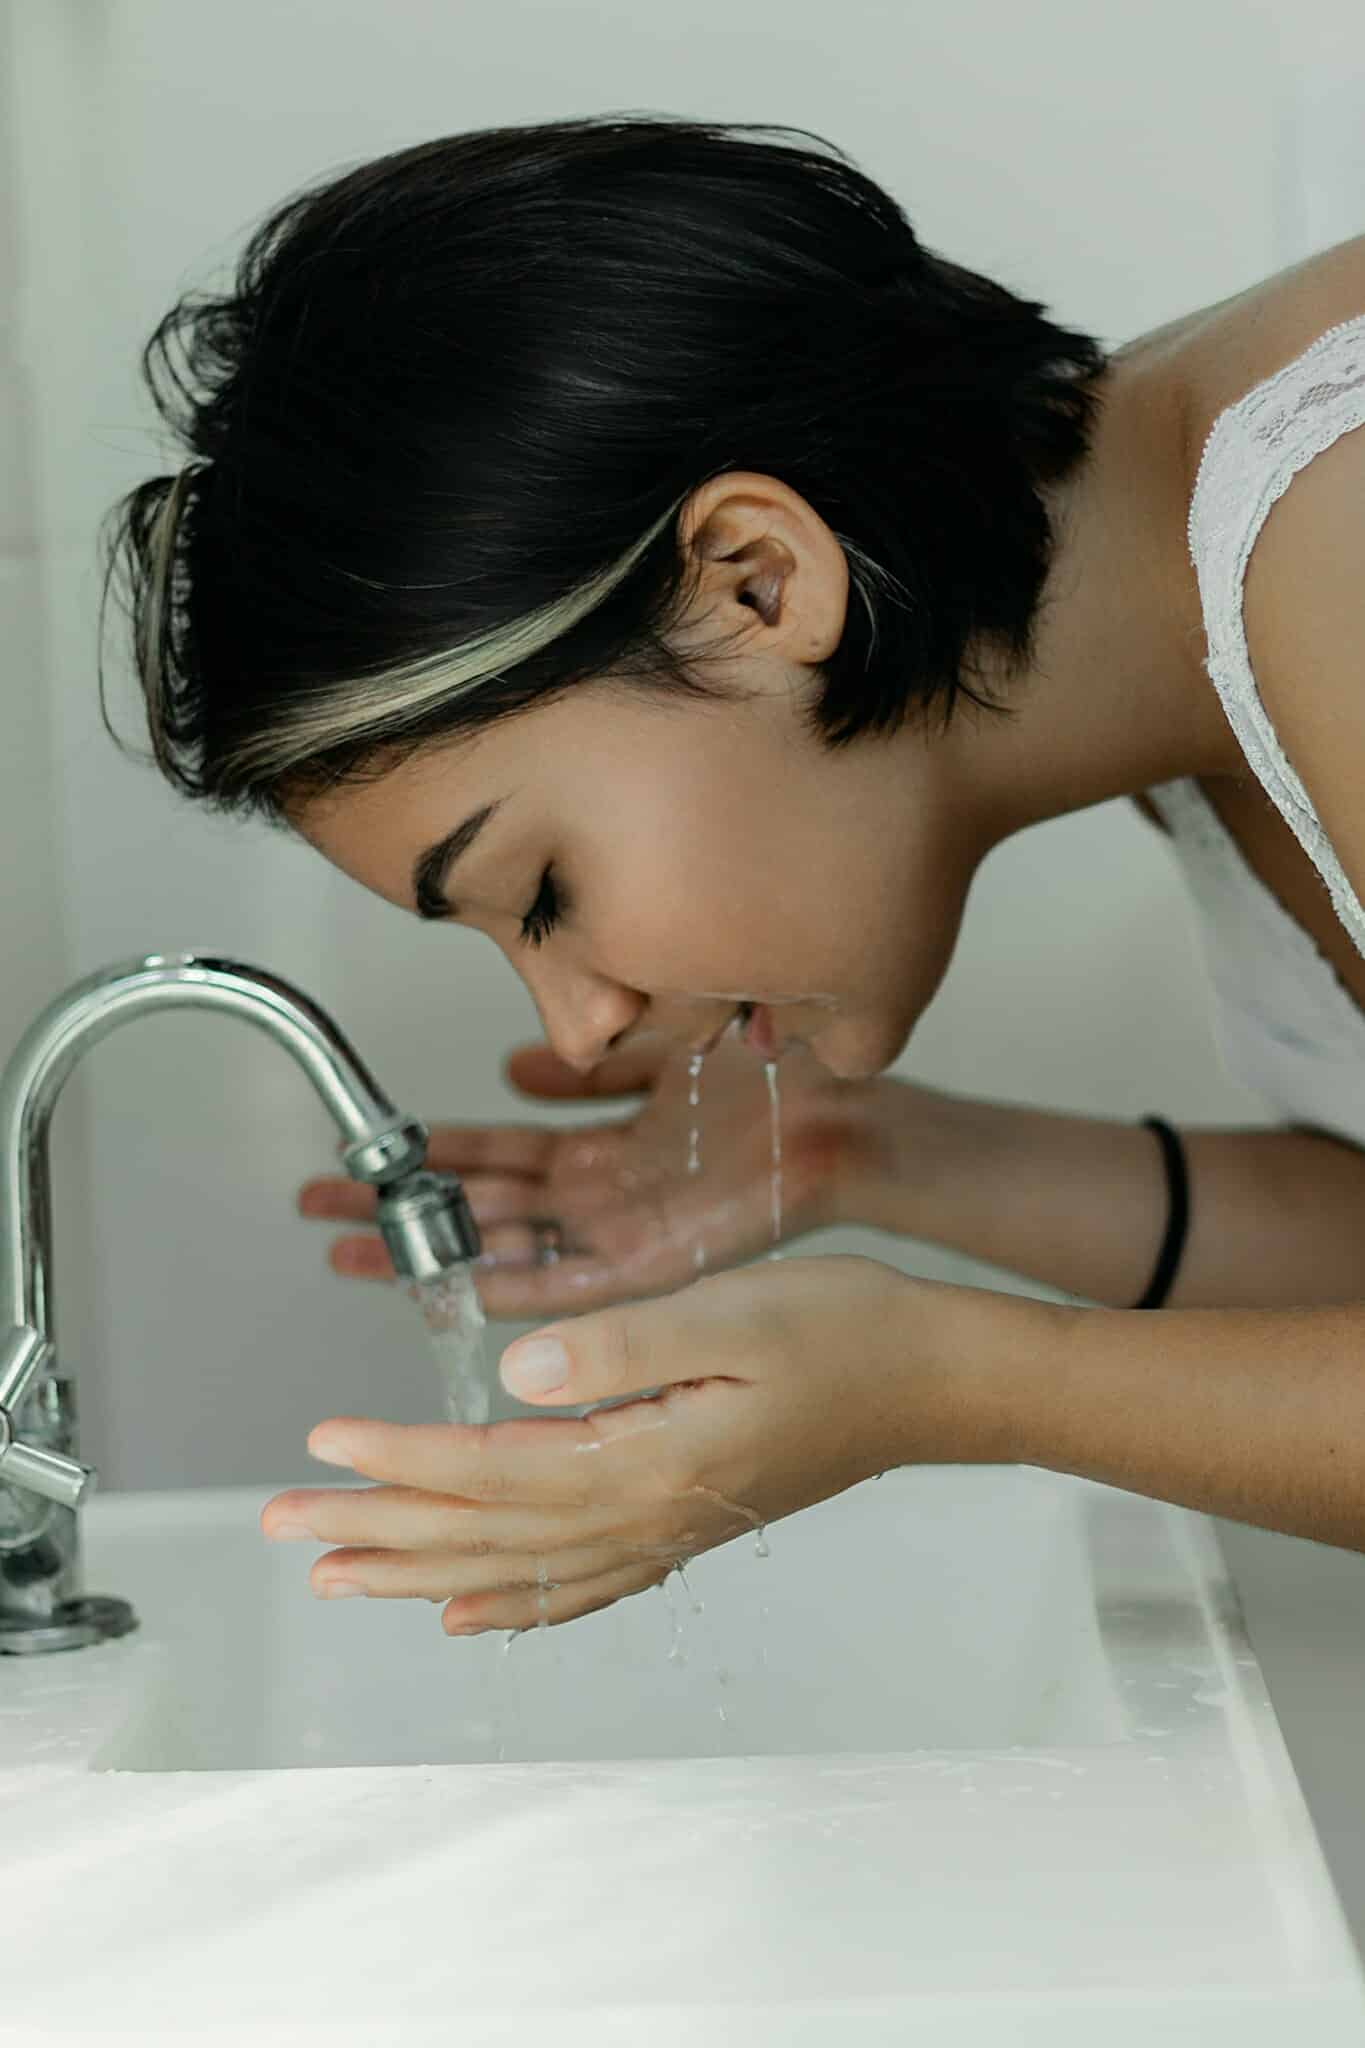 Durchschnittlich konsumiert jeder Mensch täglich 130 Liter Trinkwasser aus der Wasserleitung.